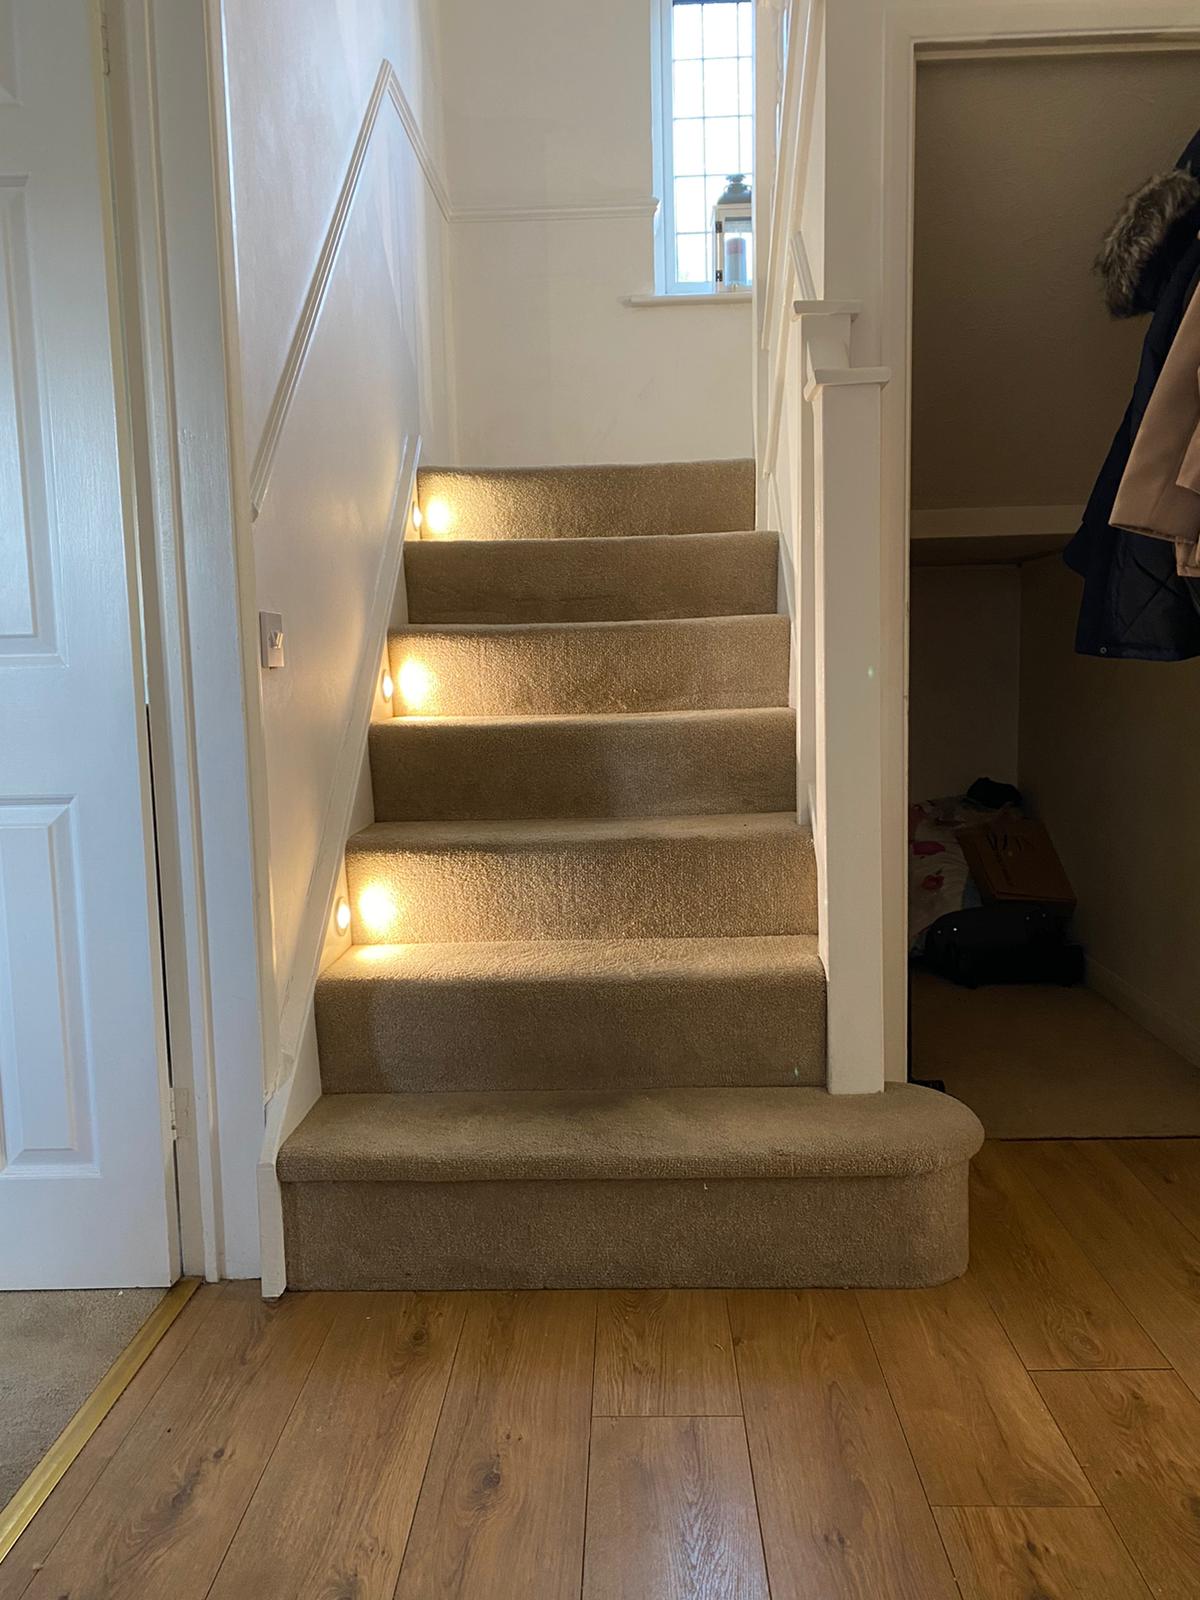 Stairway lighting